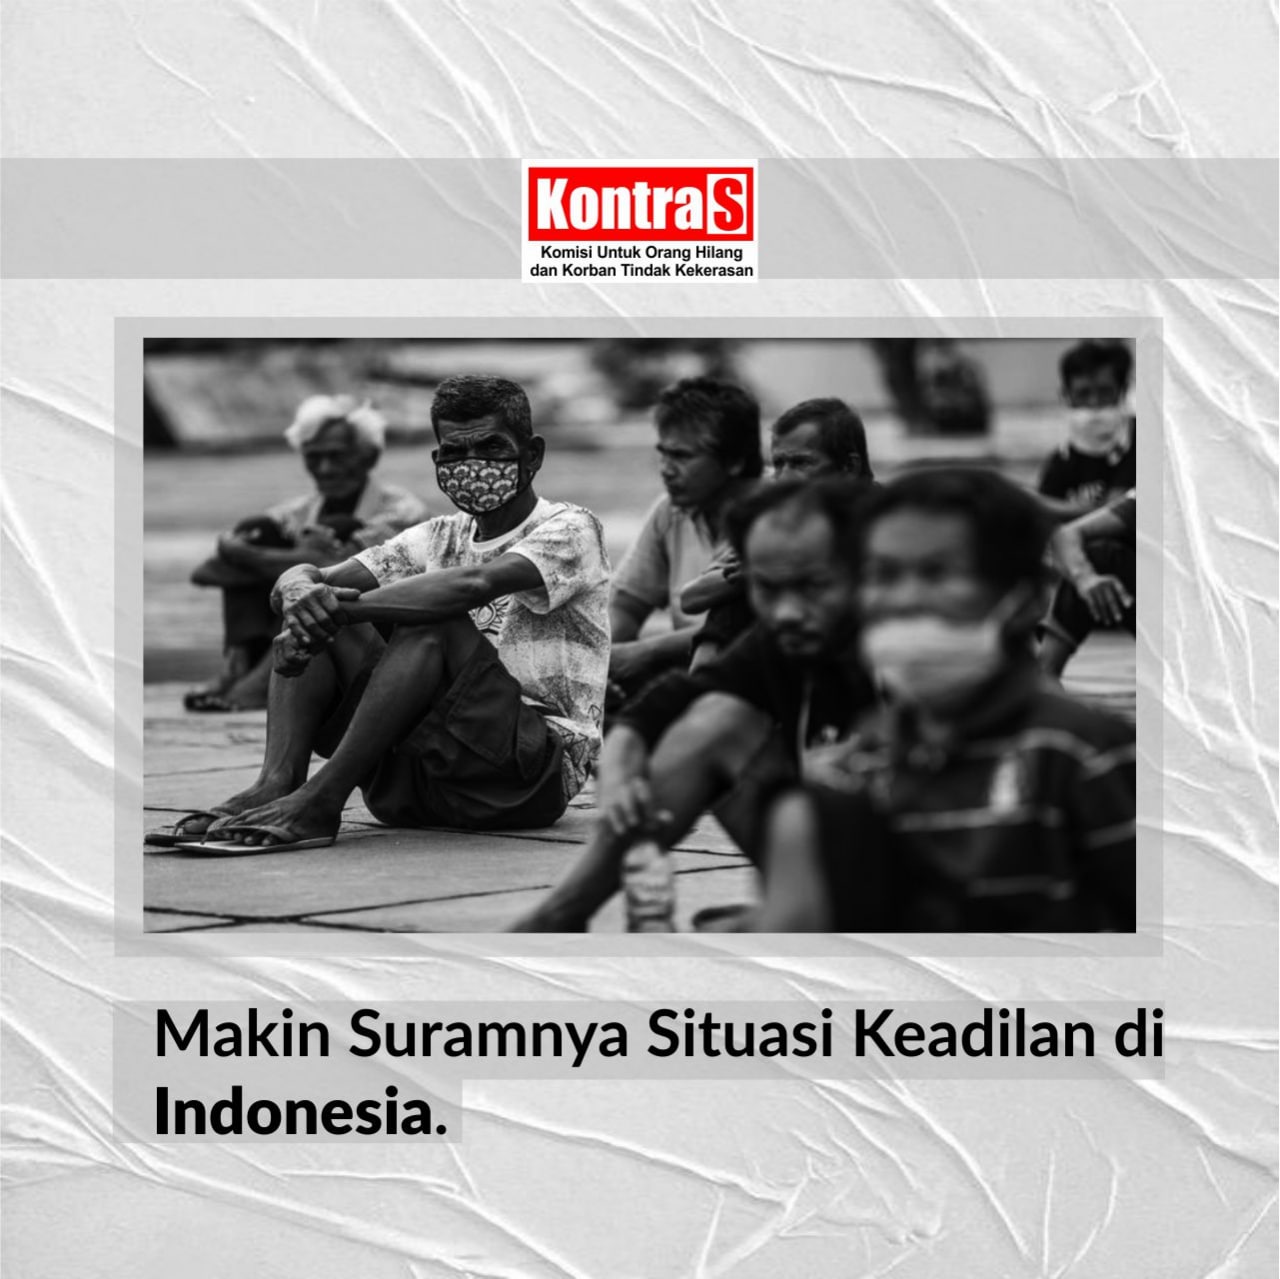 Jaminan keadilan bagi masyarakat indonesia terdapat dalam